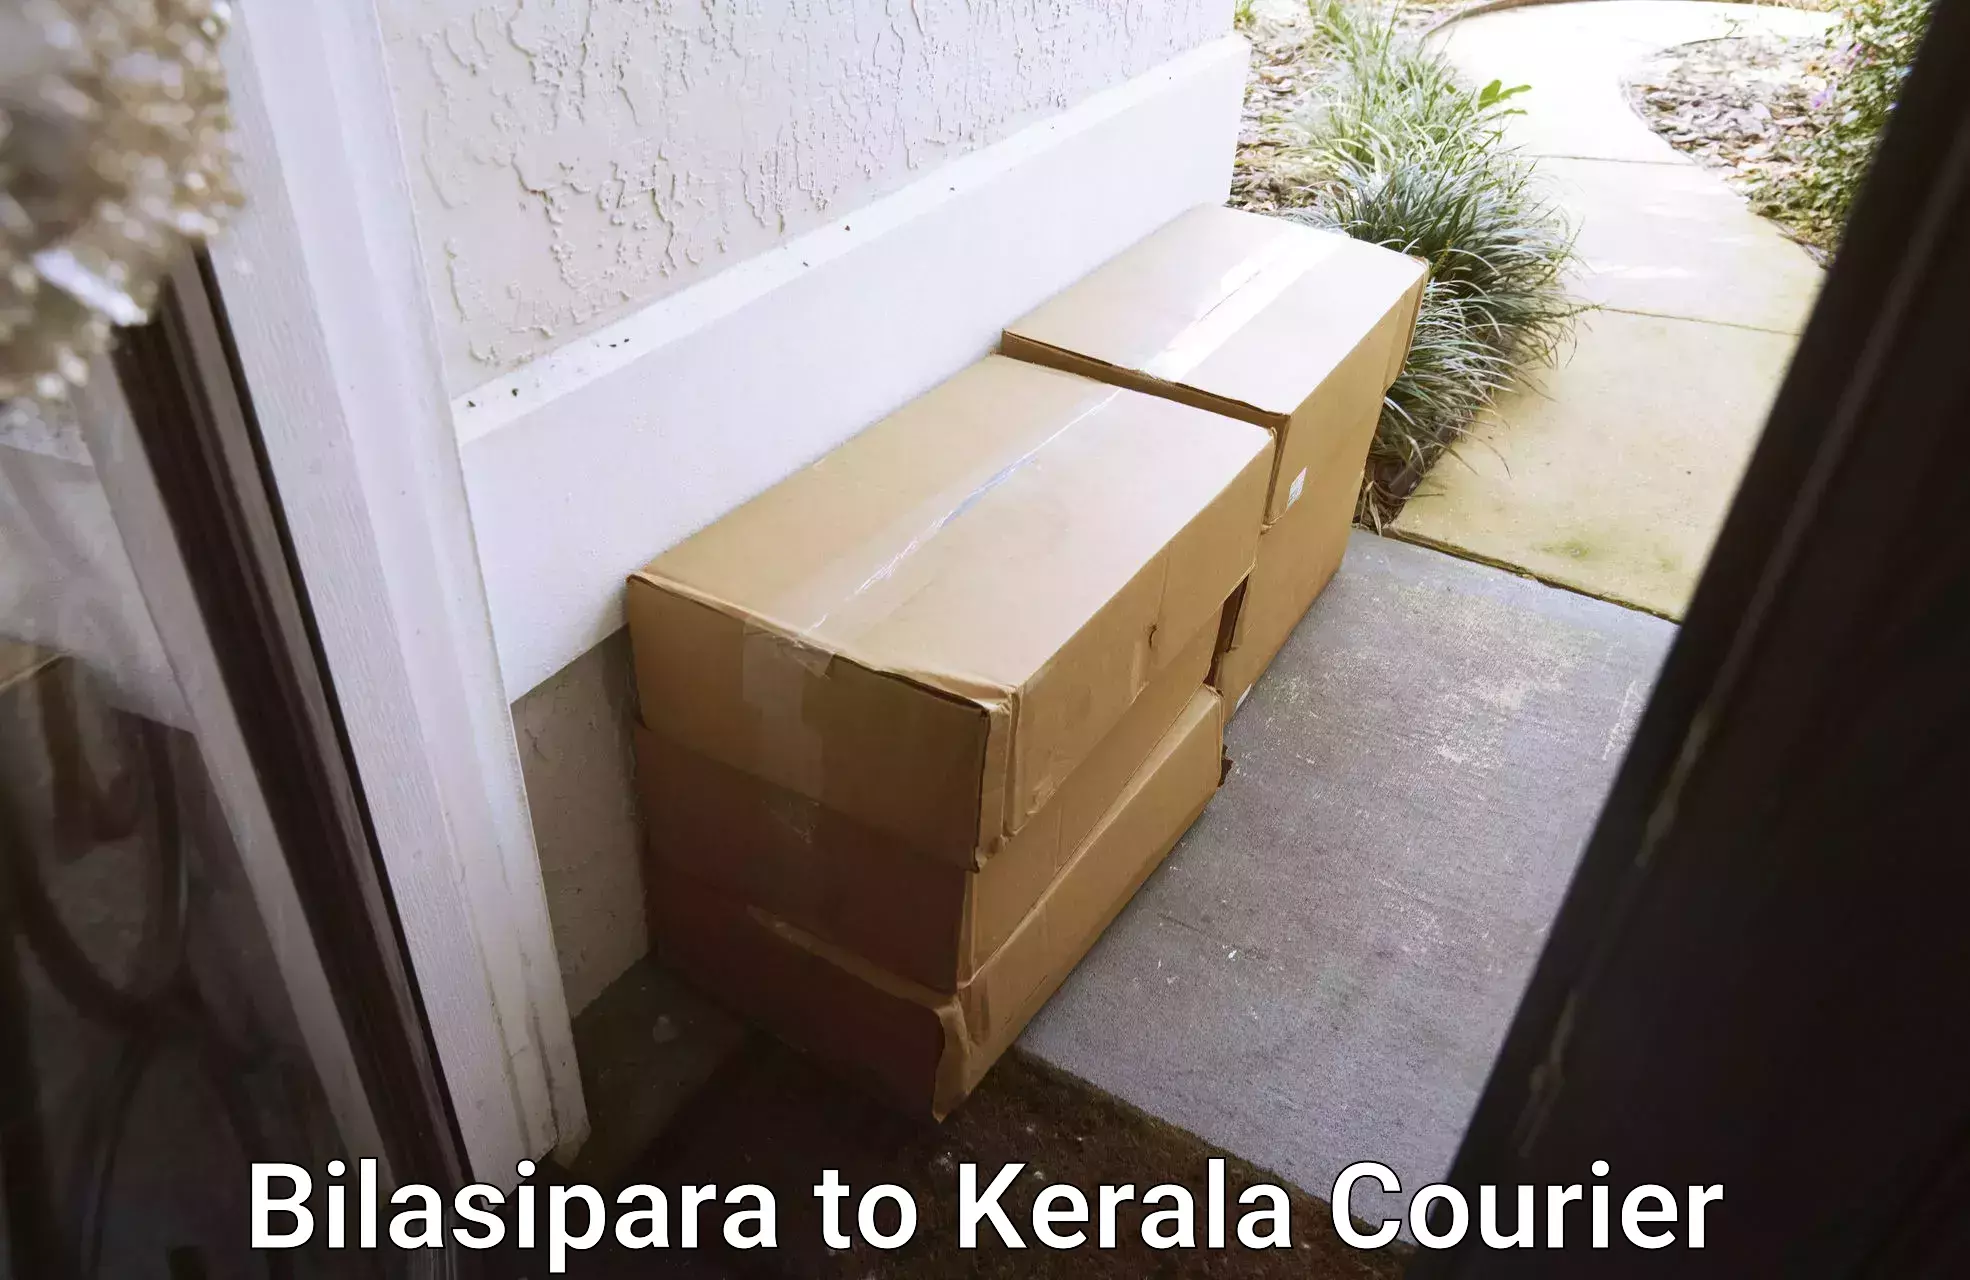 Courier service comparison Bilasipara to Kerala